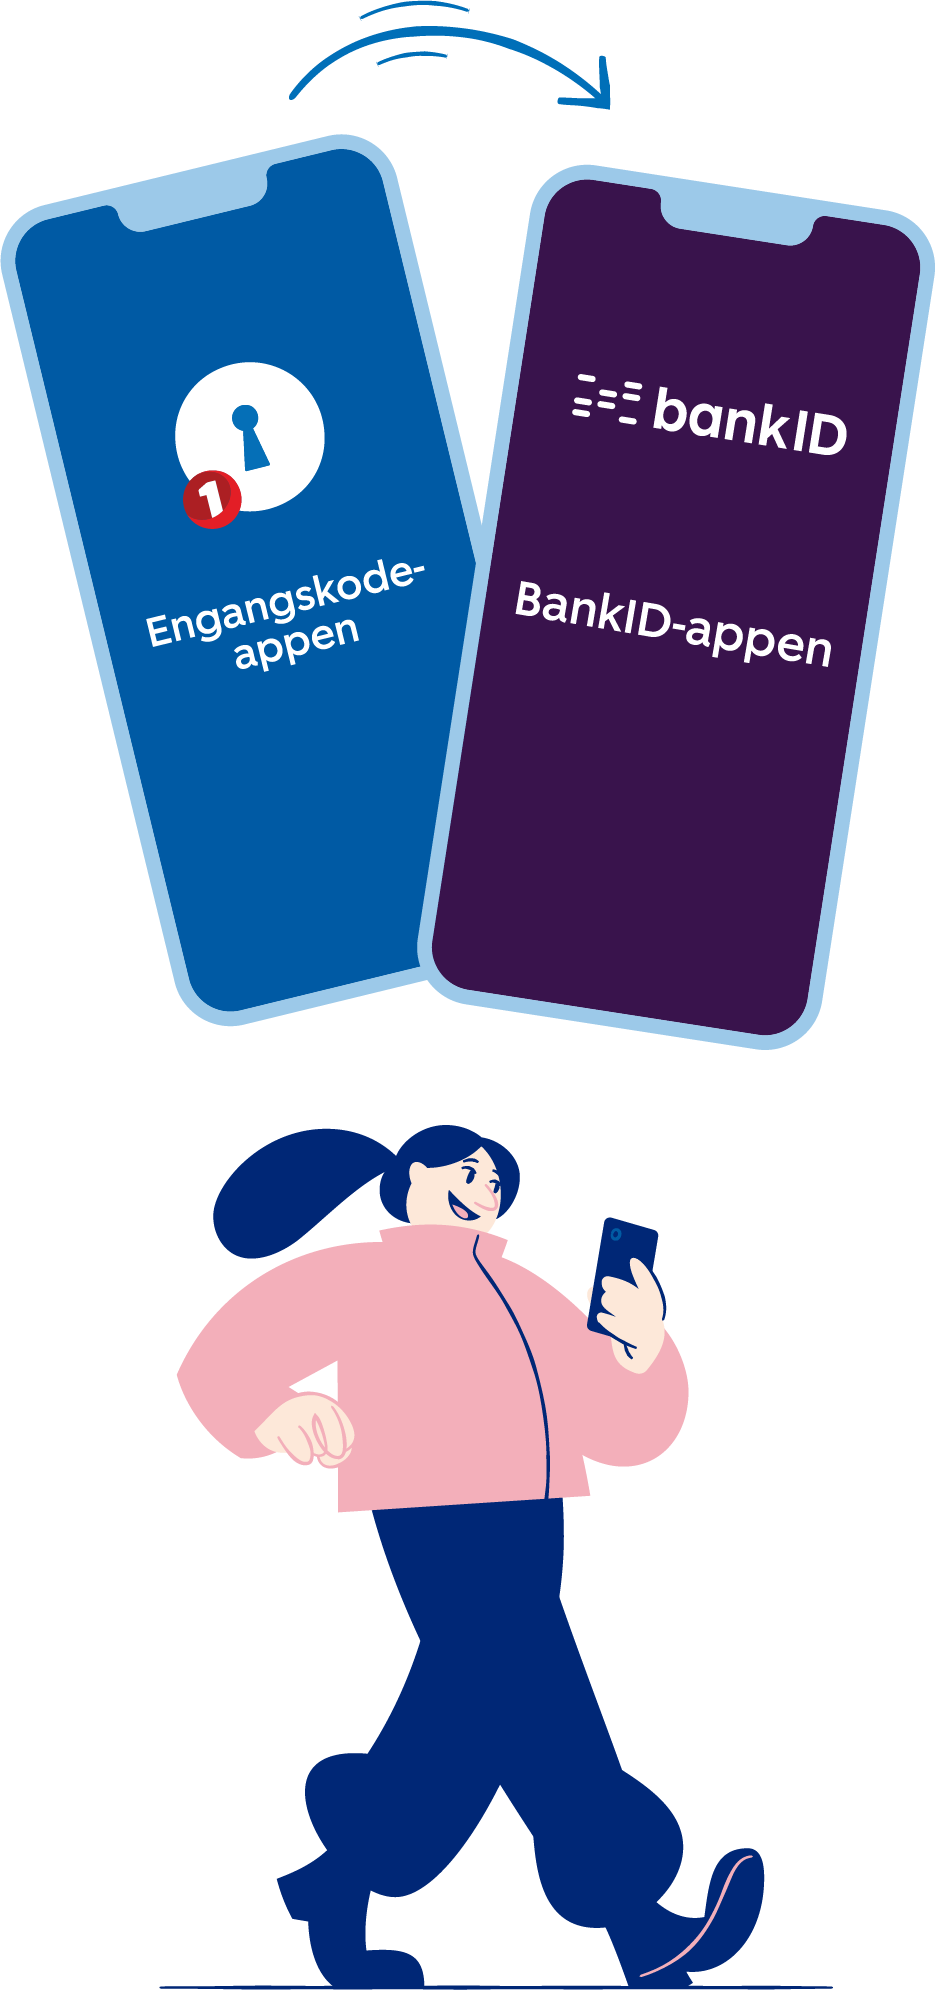 Bytt til fra engangskode-appen til BankID-appen. Illustrasjon.